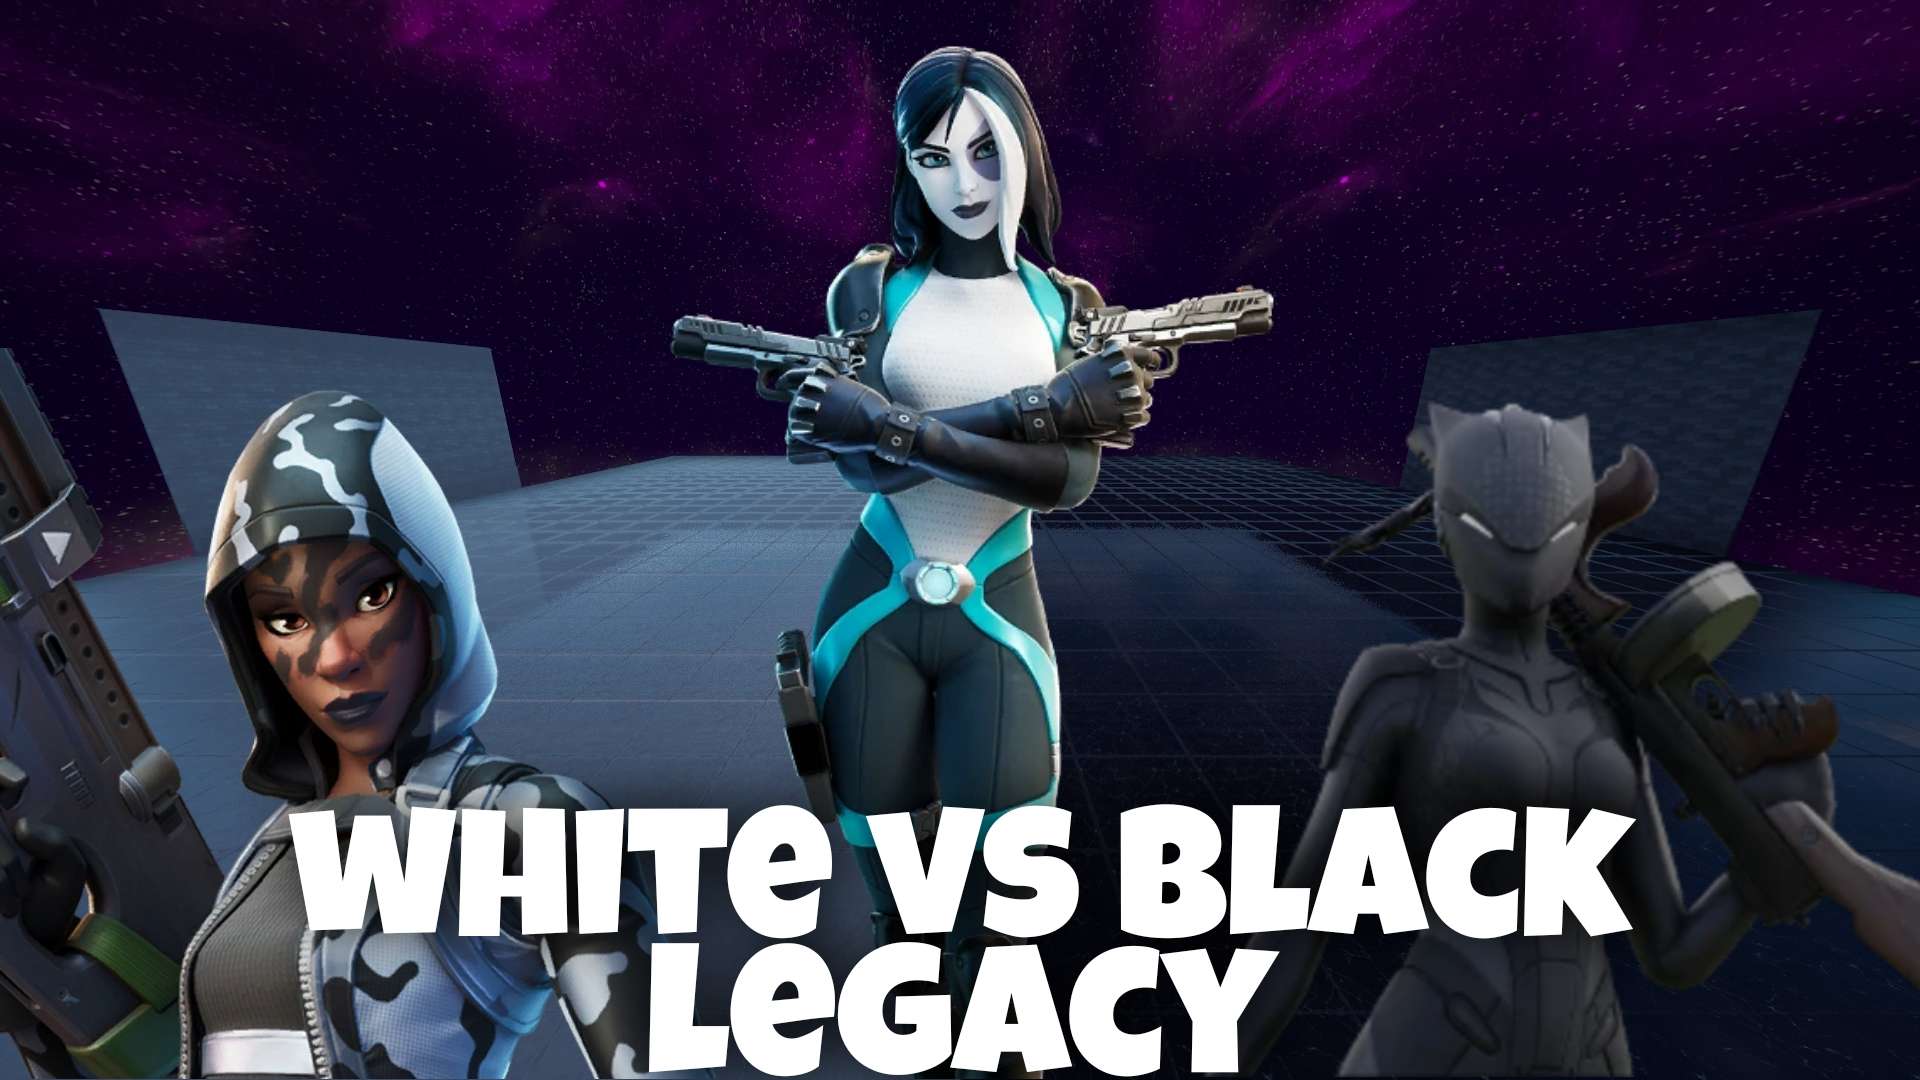 WHITE VS BLACK LEGACY image 2